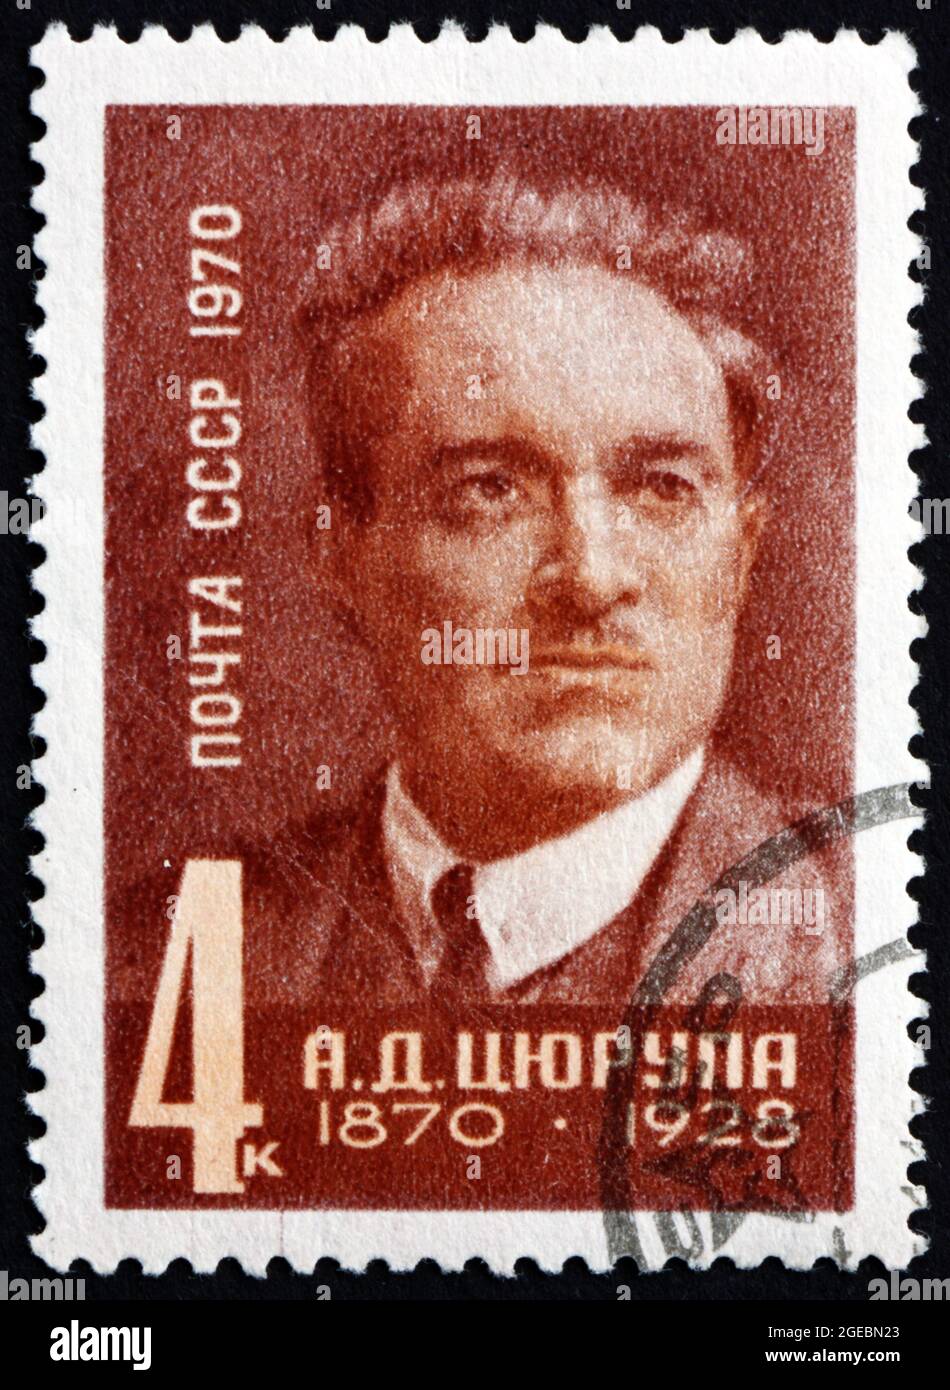 RUSSIE - VERS 1970: Un timbre imprimé en Russie montre Alexander Dmitrievitch Tsyurupa, premier vice-président du Soviet of People Commissars, circ Banque D'Images